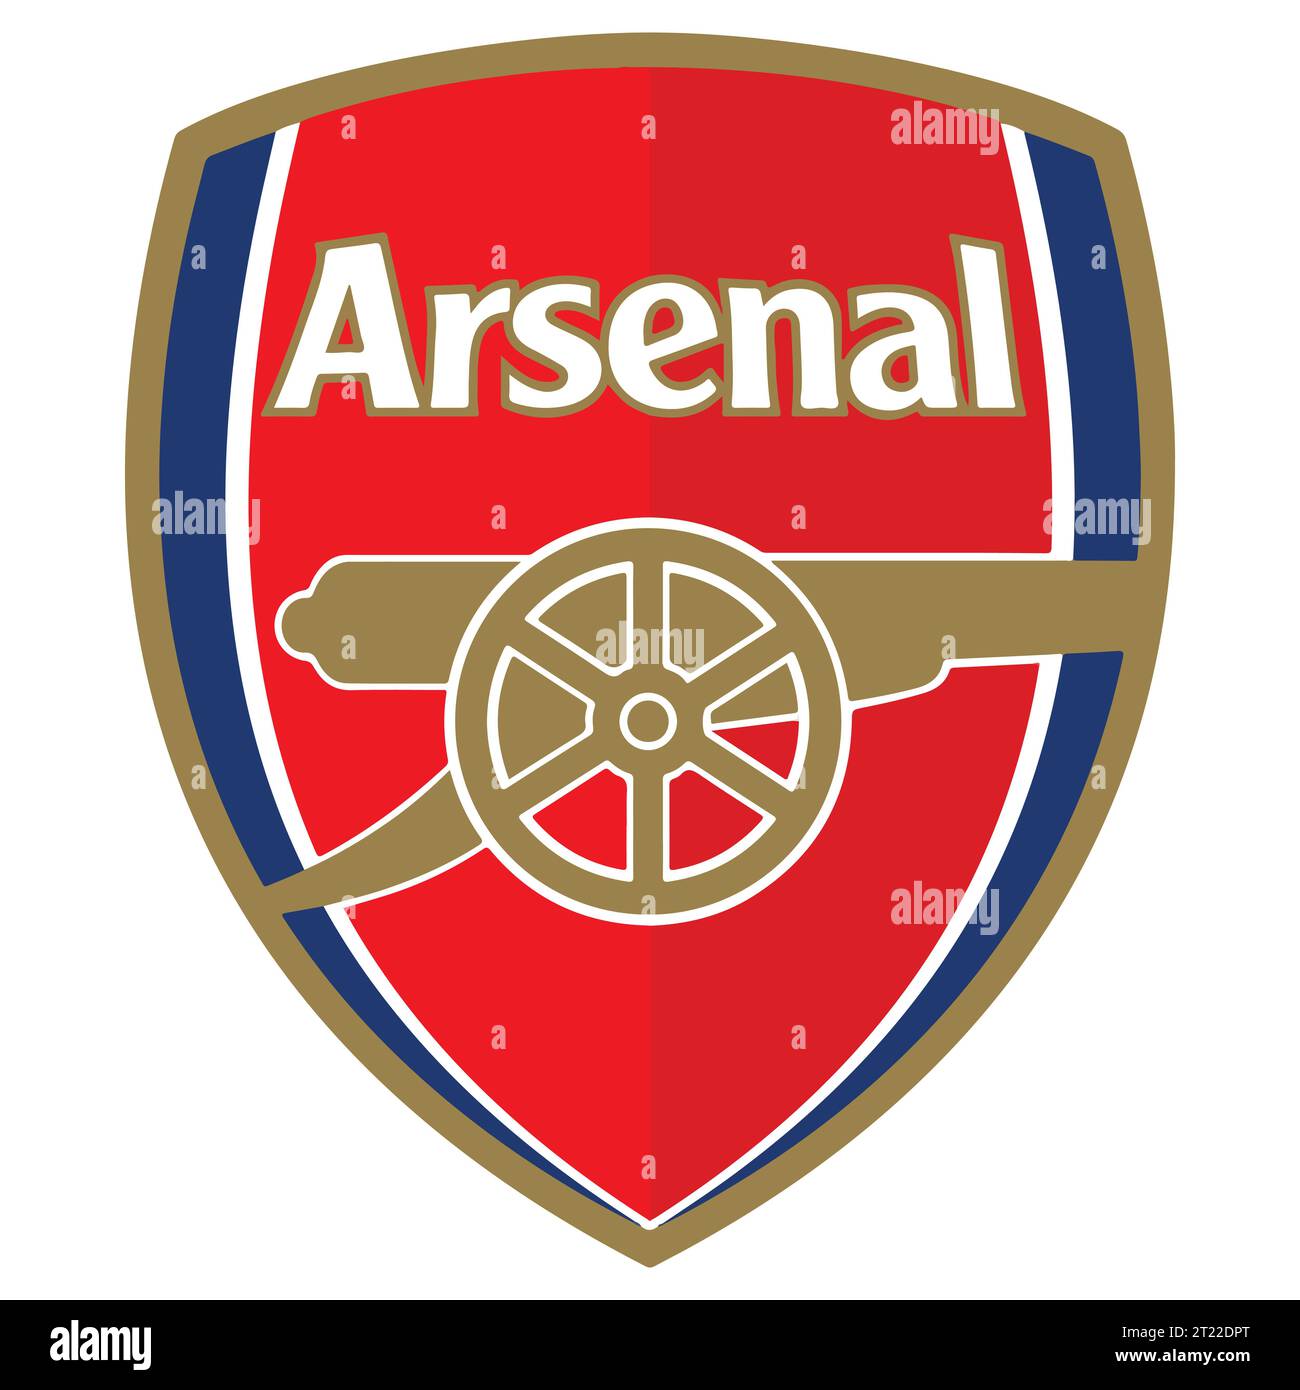 Arsenal FC Colorful Logo sistema di campionato di calcio professionistico inglese, illustrazione vettoriale immagine astratta Illustrazione Vettoriale